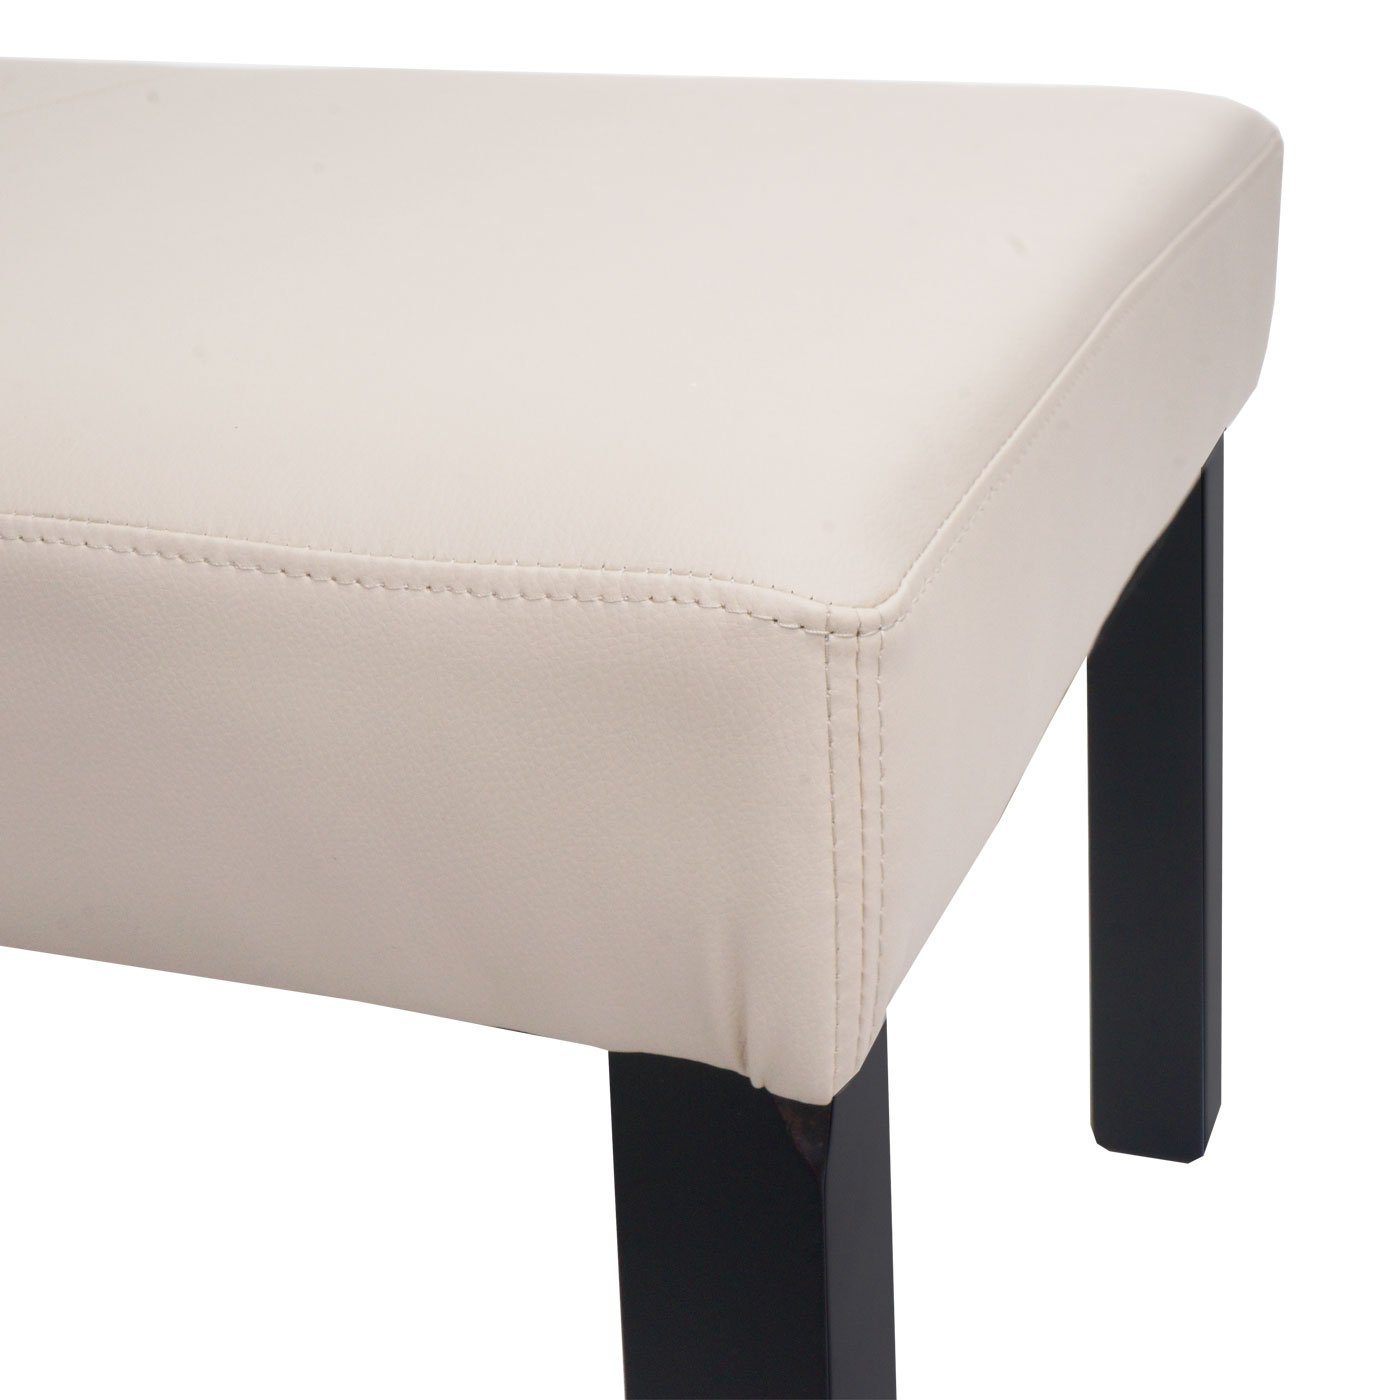 MCW Stabile modernes Design, braun M37S, Sitzbank beige Sitzfläche, Füße | Gepolsterte